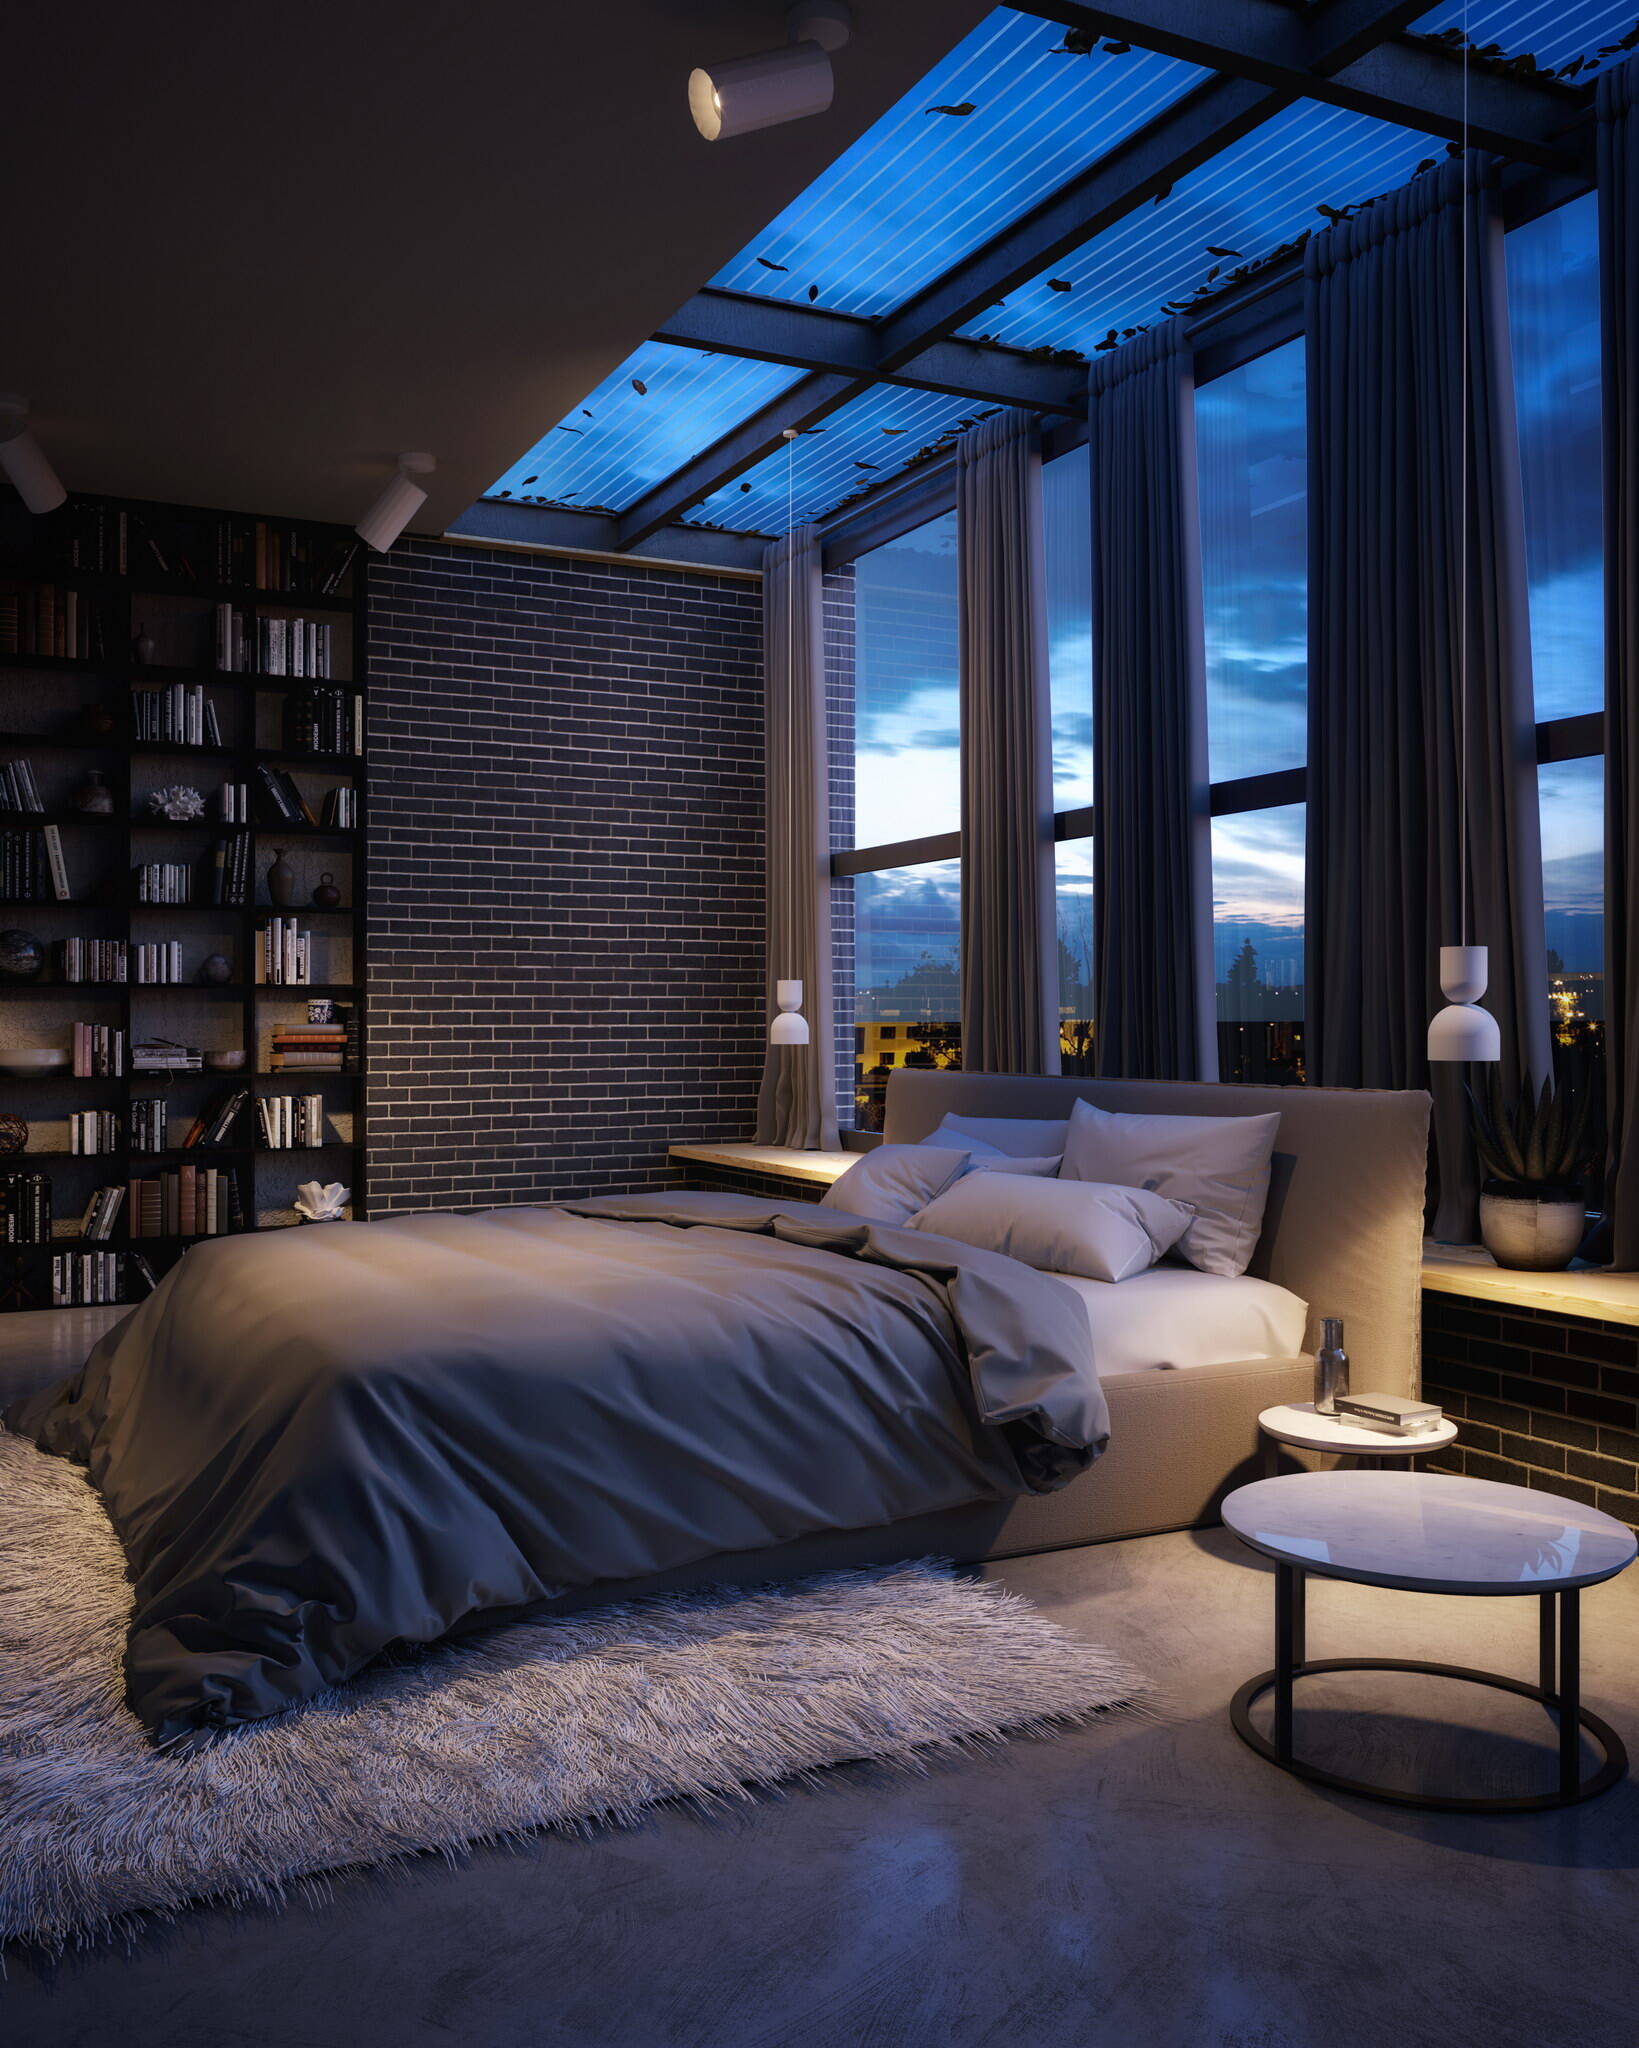 Thiết kế phòng ngủ dưới giếng trời mang lại cảm giác tuyệt vời cho giấc ngủ của bạn. Hãy khám phá những hình ảnh đẹp và sáng tạo này để bạn có thêm ý tưởng cho phòng ngủ của mình.